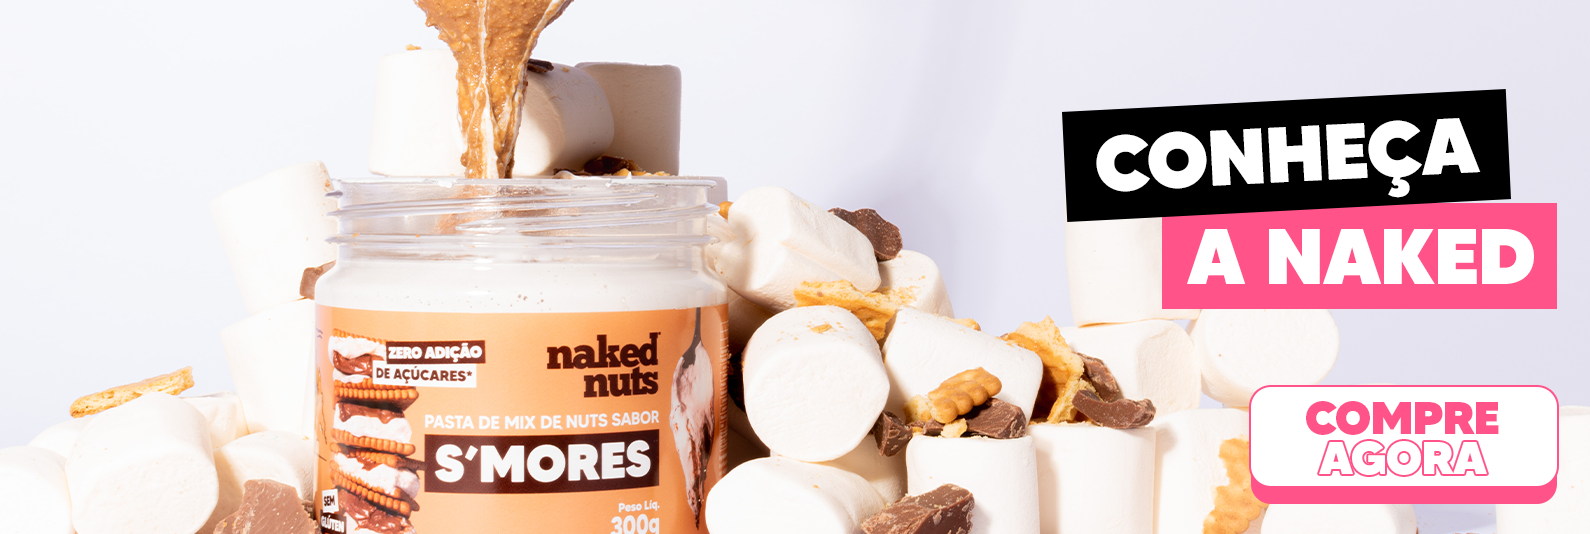 Conheça a Naked Nuts, com nuts ricas em vitamina e